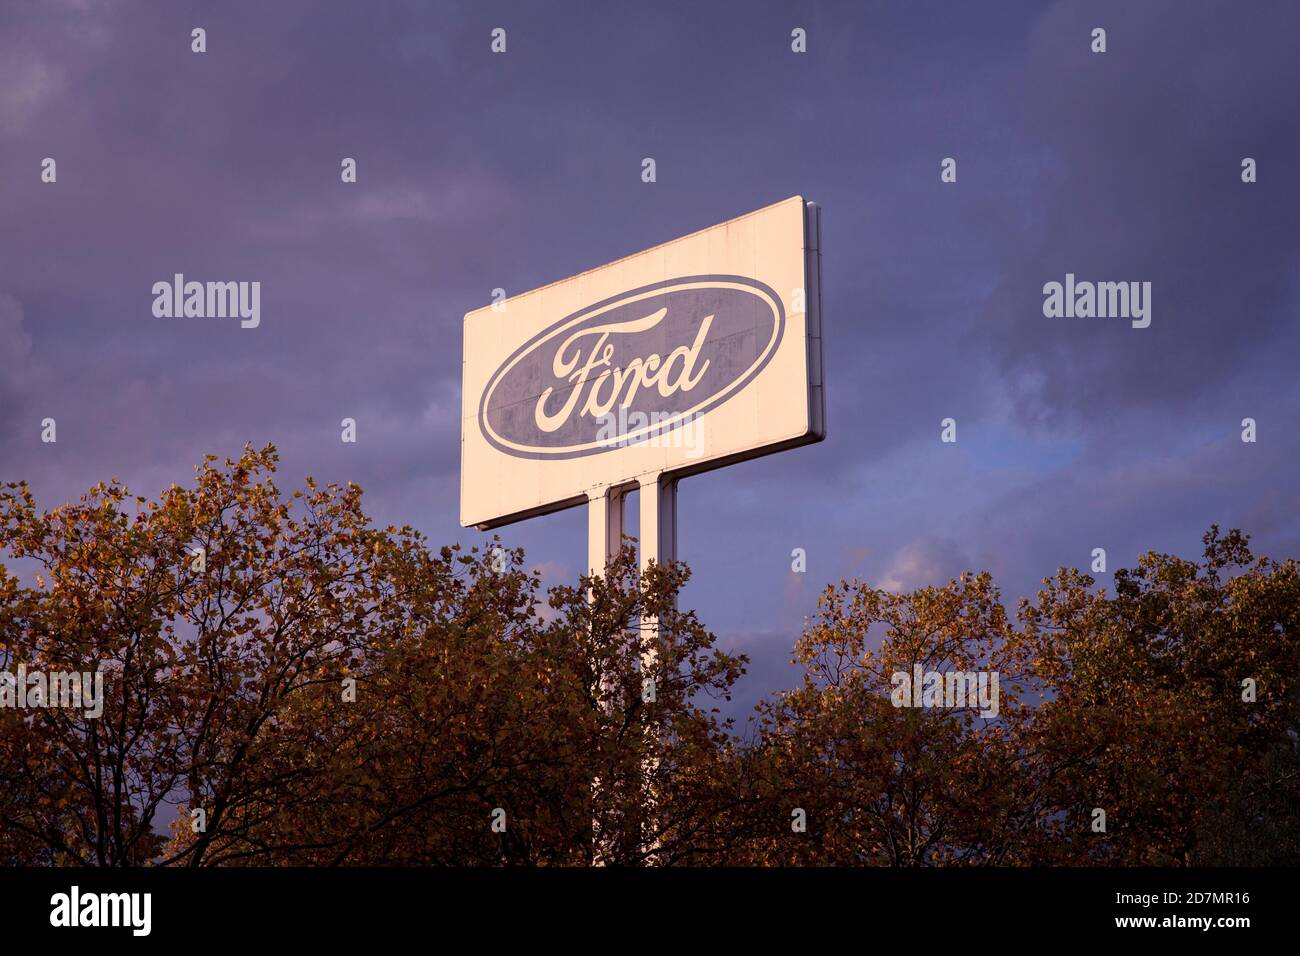 Grande pubblicità segno alla Ford fabbrica automobilistica nella contrada Niehl, Colonia, Germania. grosses Werbeschild an den Ford-Werken in Niehl, Foto Stock